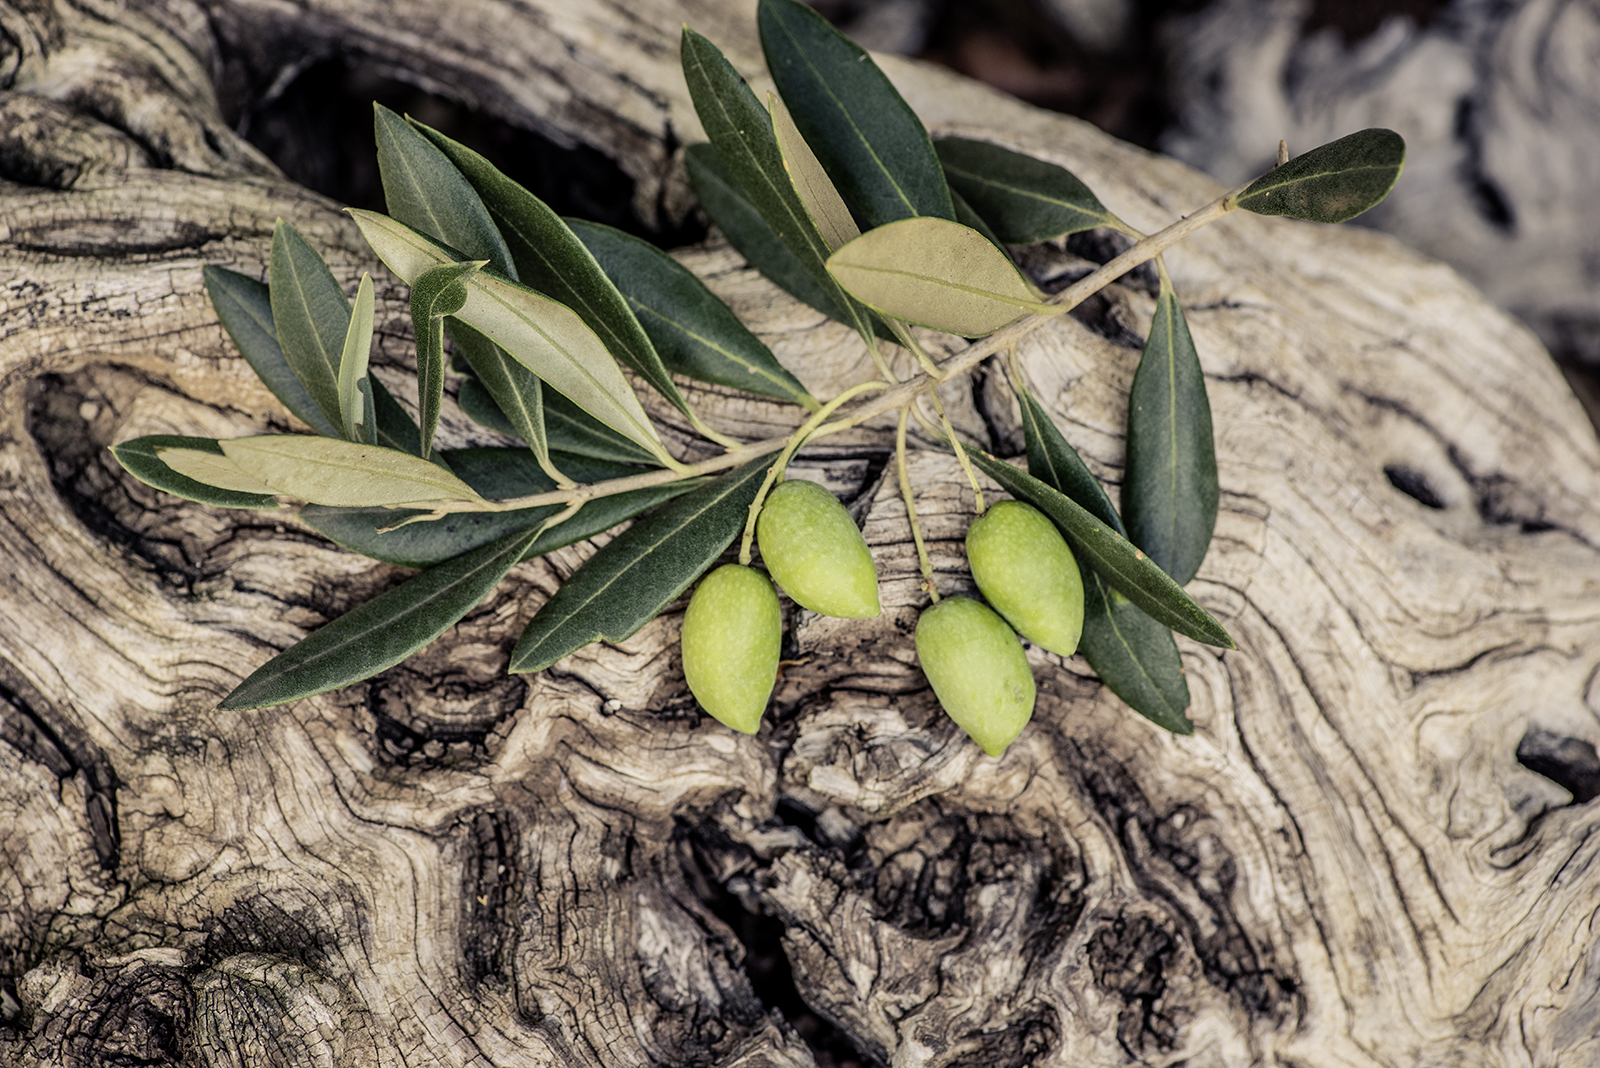 olivenzweig liegt auf olivenholz